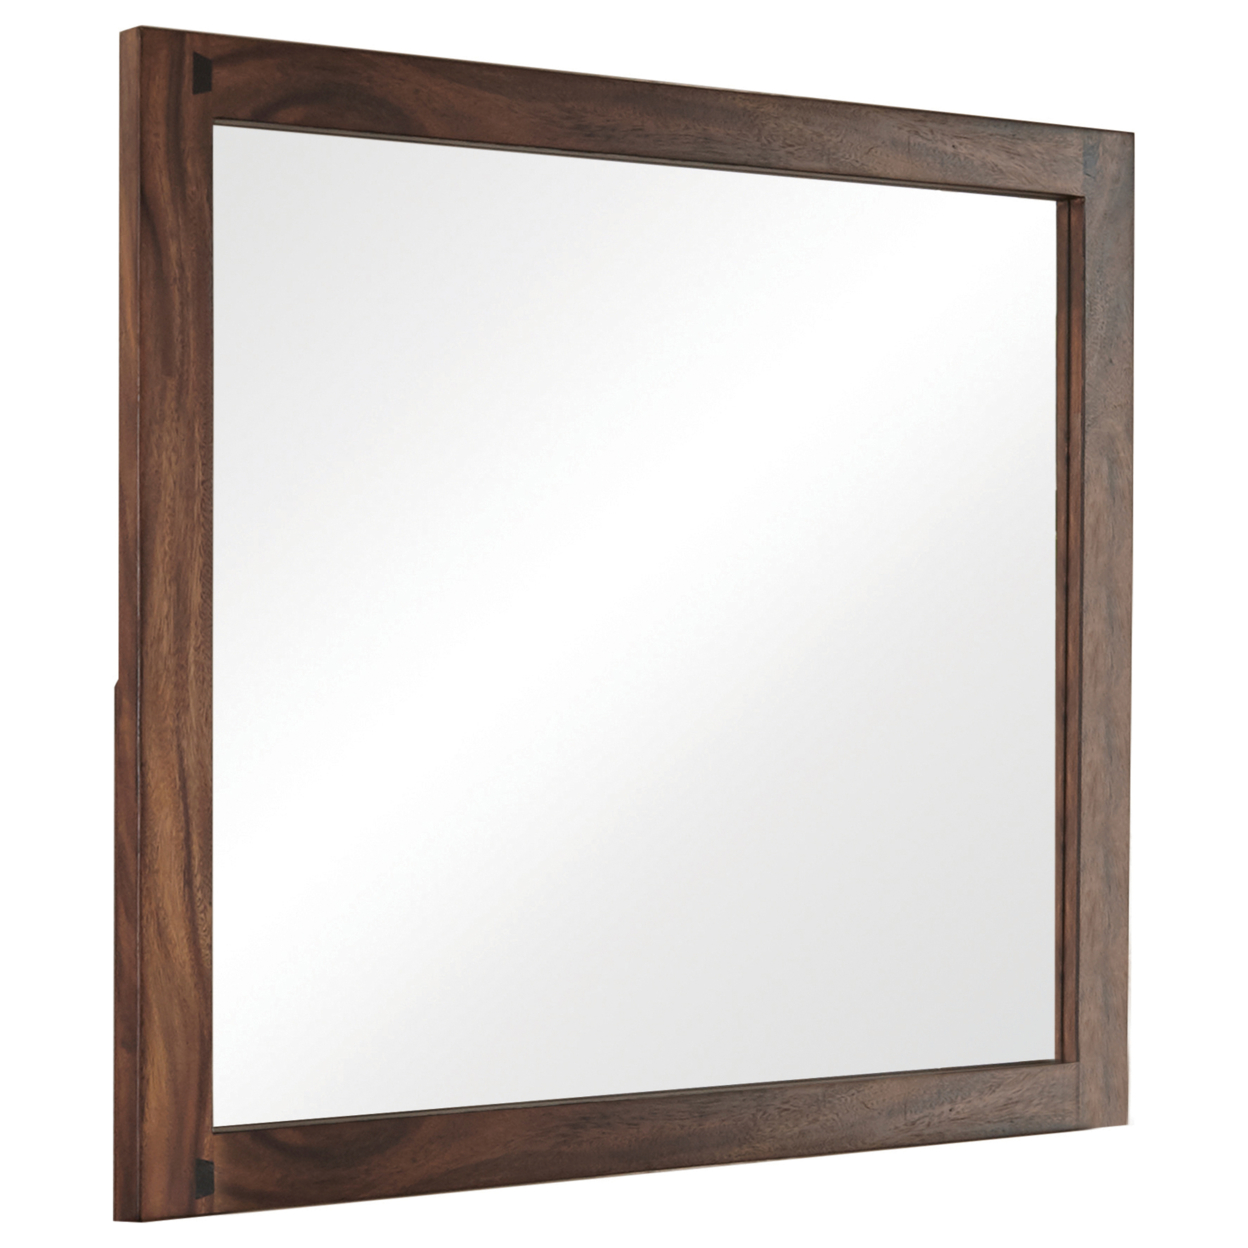 44 Inch Rectangular Wood Frame Mirror, Brown- Saltoro Sherpi